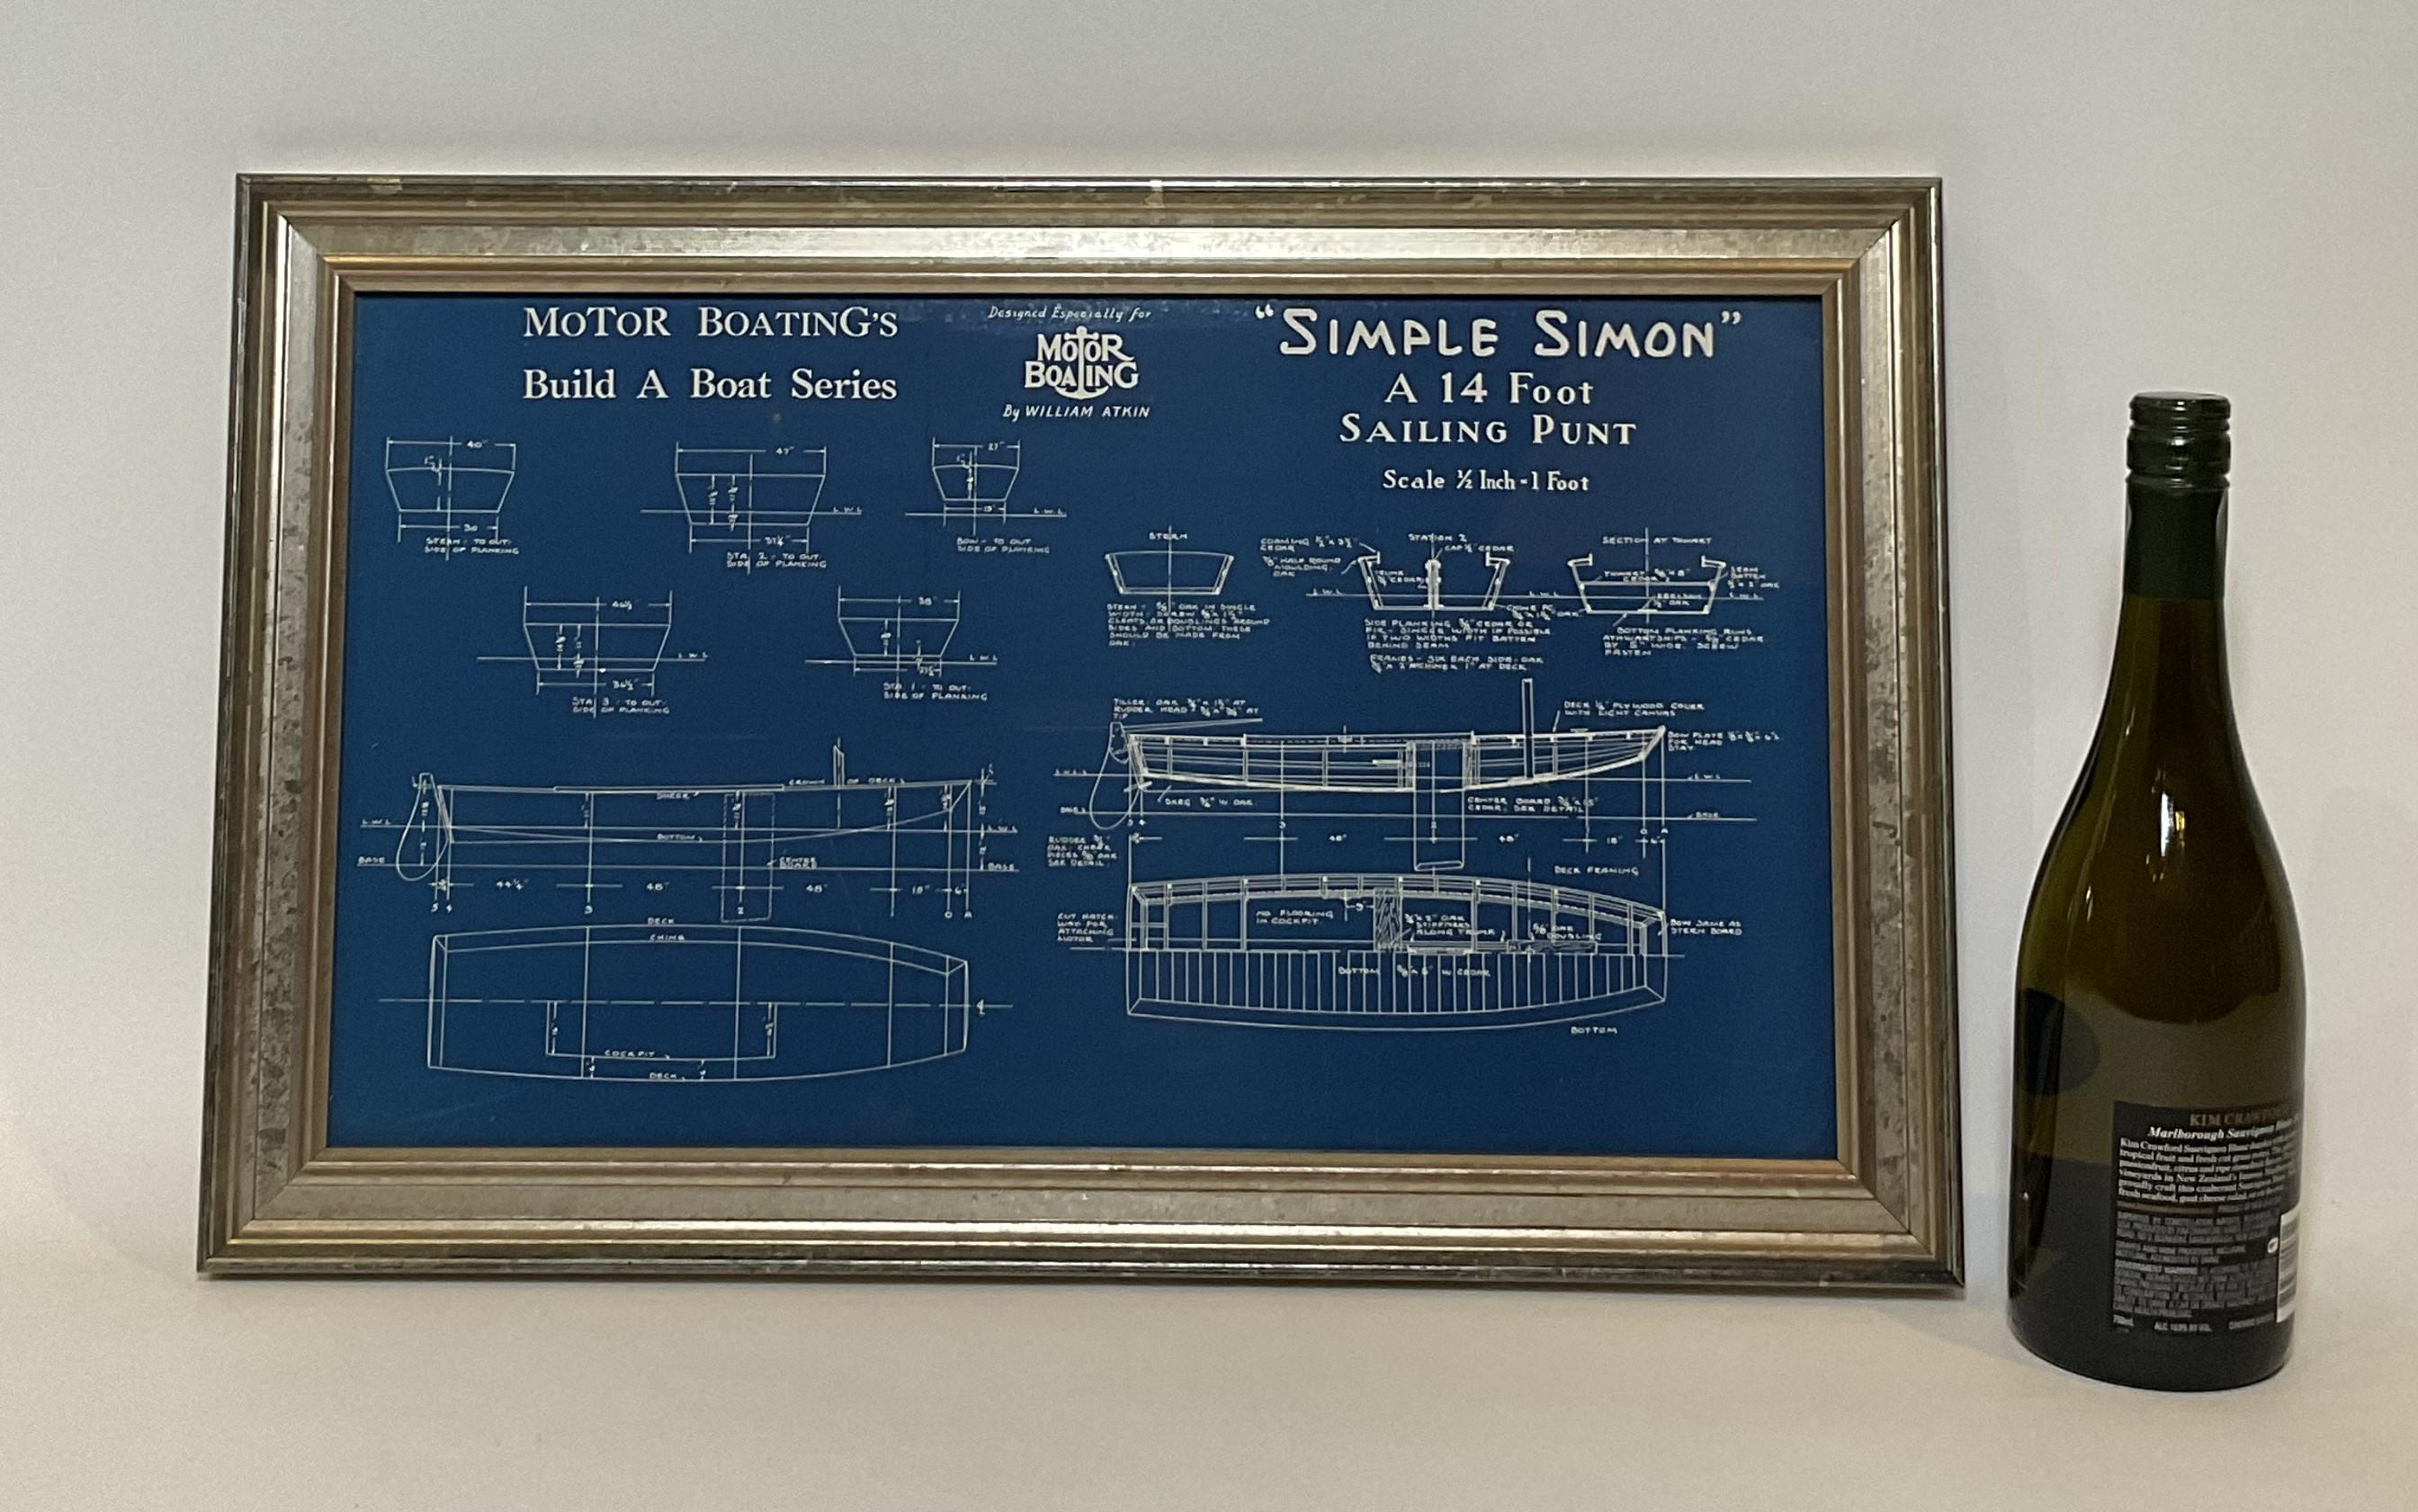 Gerahmte Blaupause, die einen vierzehn Fuß langen Segelkahn namens Simple Simon zeigt. Der Plan stammt von Motor Boating Publishing aus den 1930er Jahren. Zeigt alle Konstruktionsdetails. Schön gerahmt.

Gesamtabmessungen: 14 